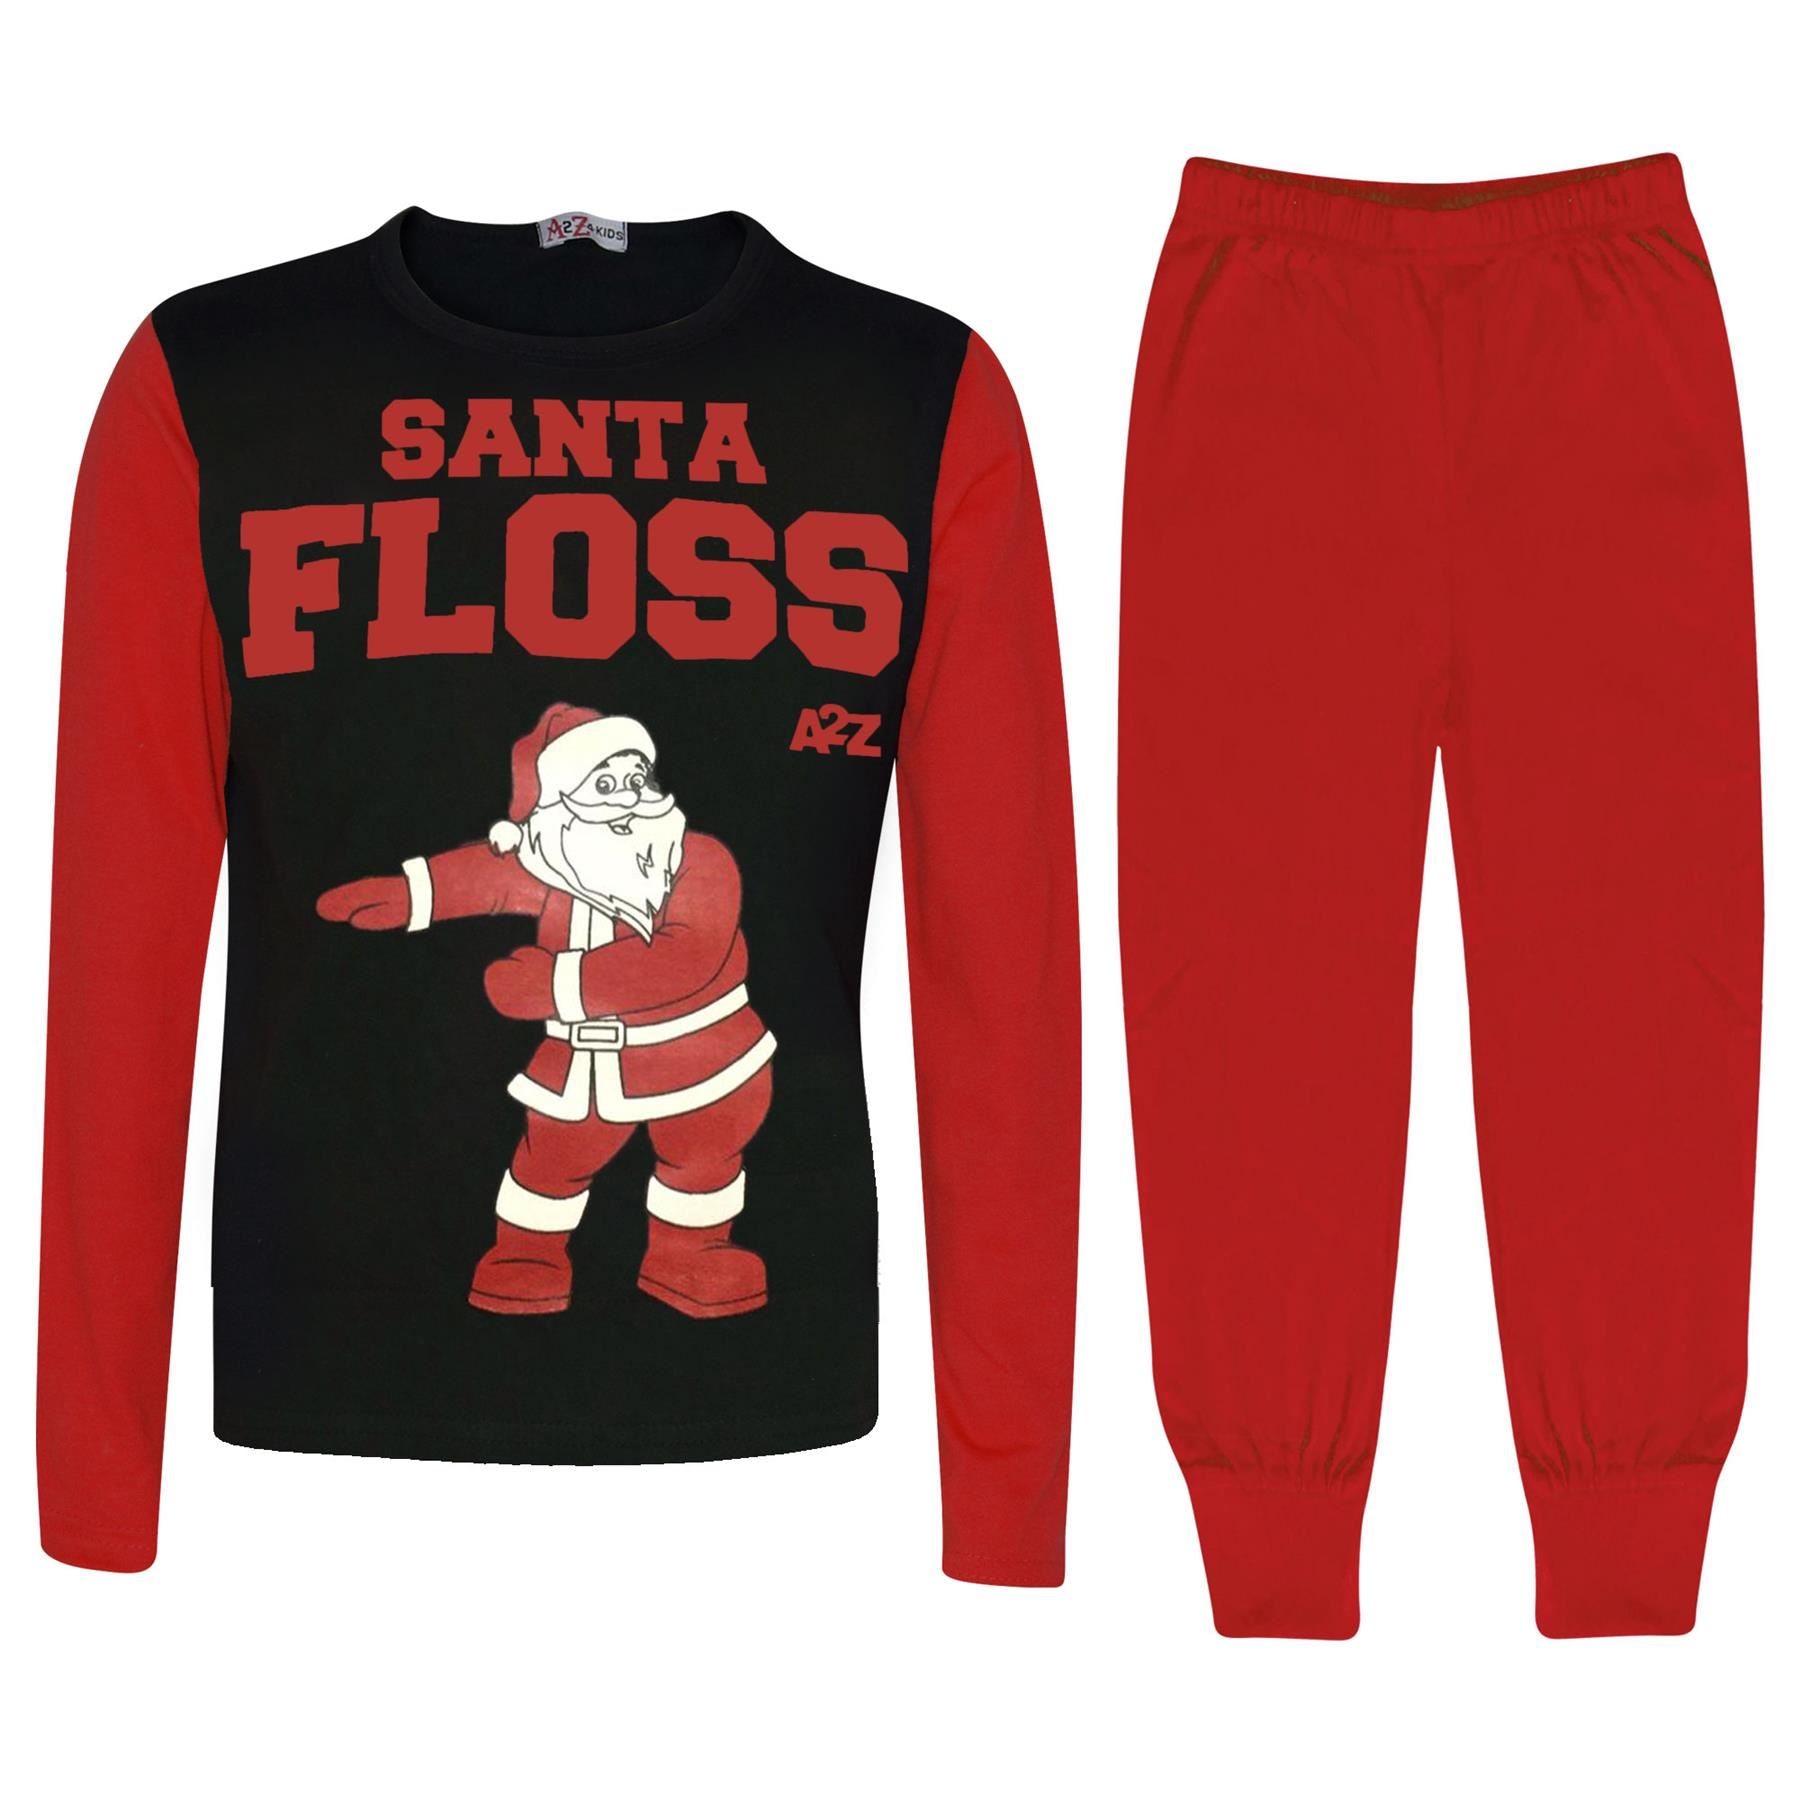 Kids Unisex Santa Floss Print Red Pyjamas Set